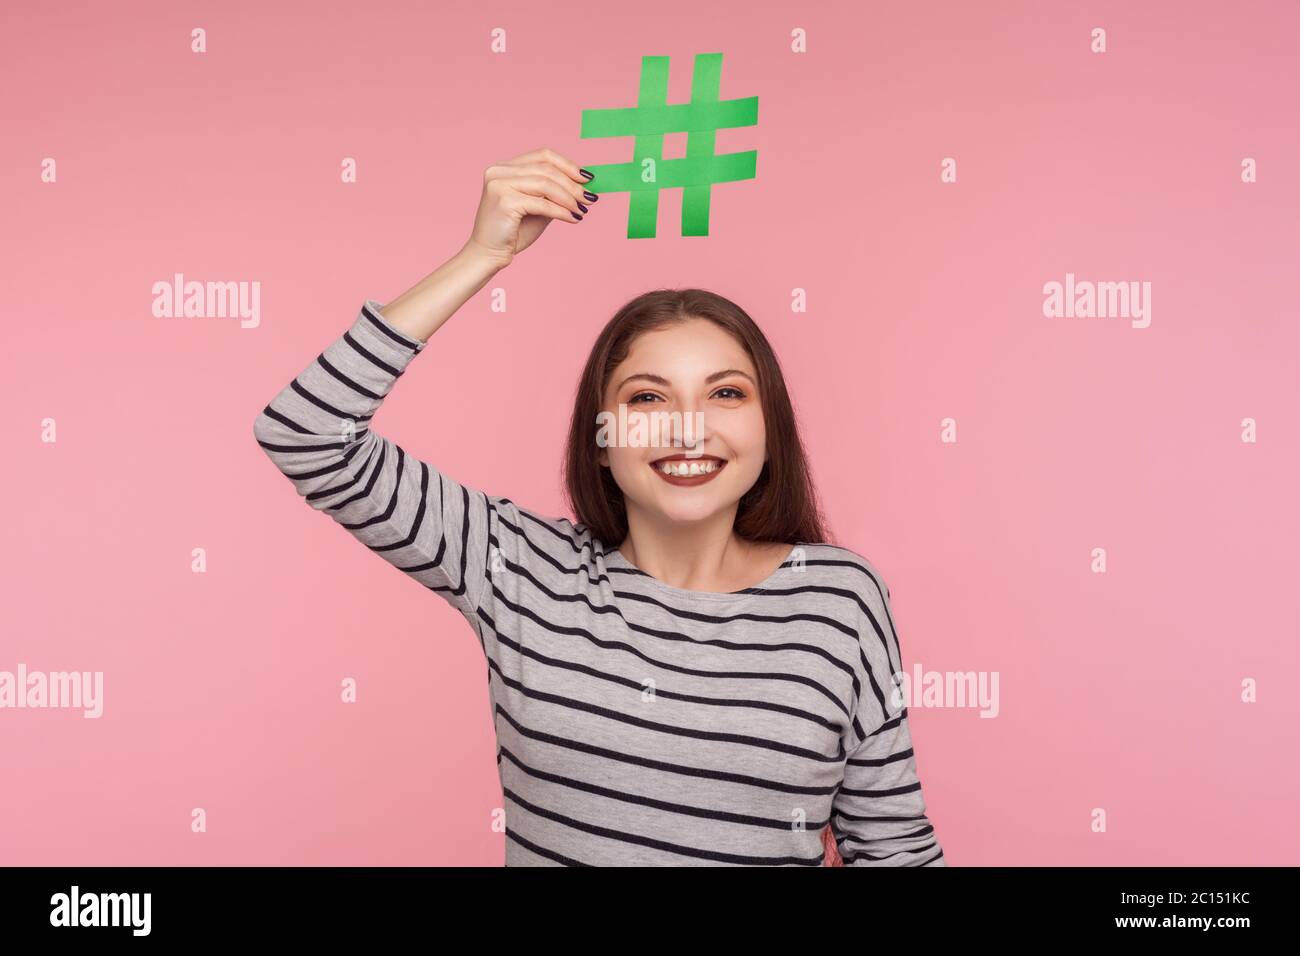 Vérifiez le sujet viral d'Internet! Portrait de la jeune femme heureuse en sweat-shirt symbole hashtag sur la tête et regardant l'appareil photo avec le sourire en dents de souris, suivant tr Banque D'Images